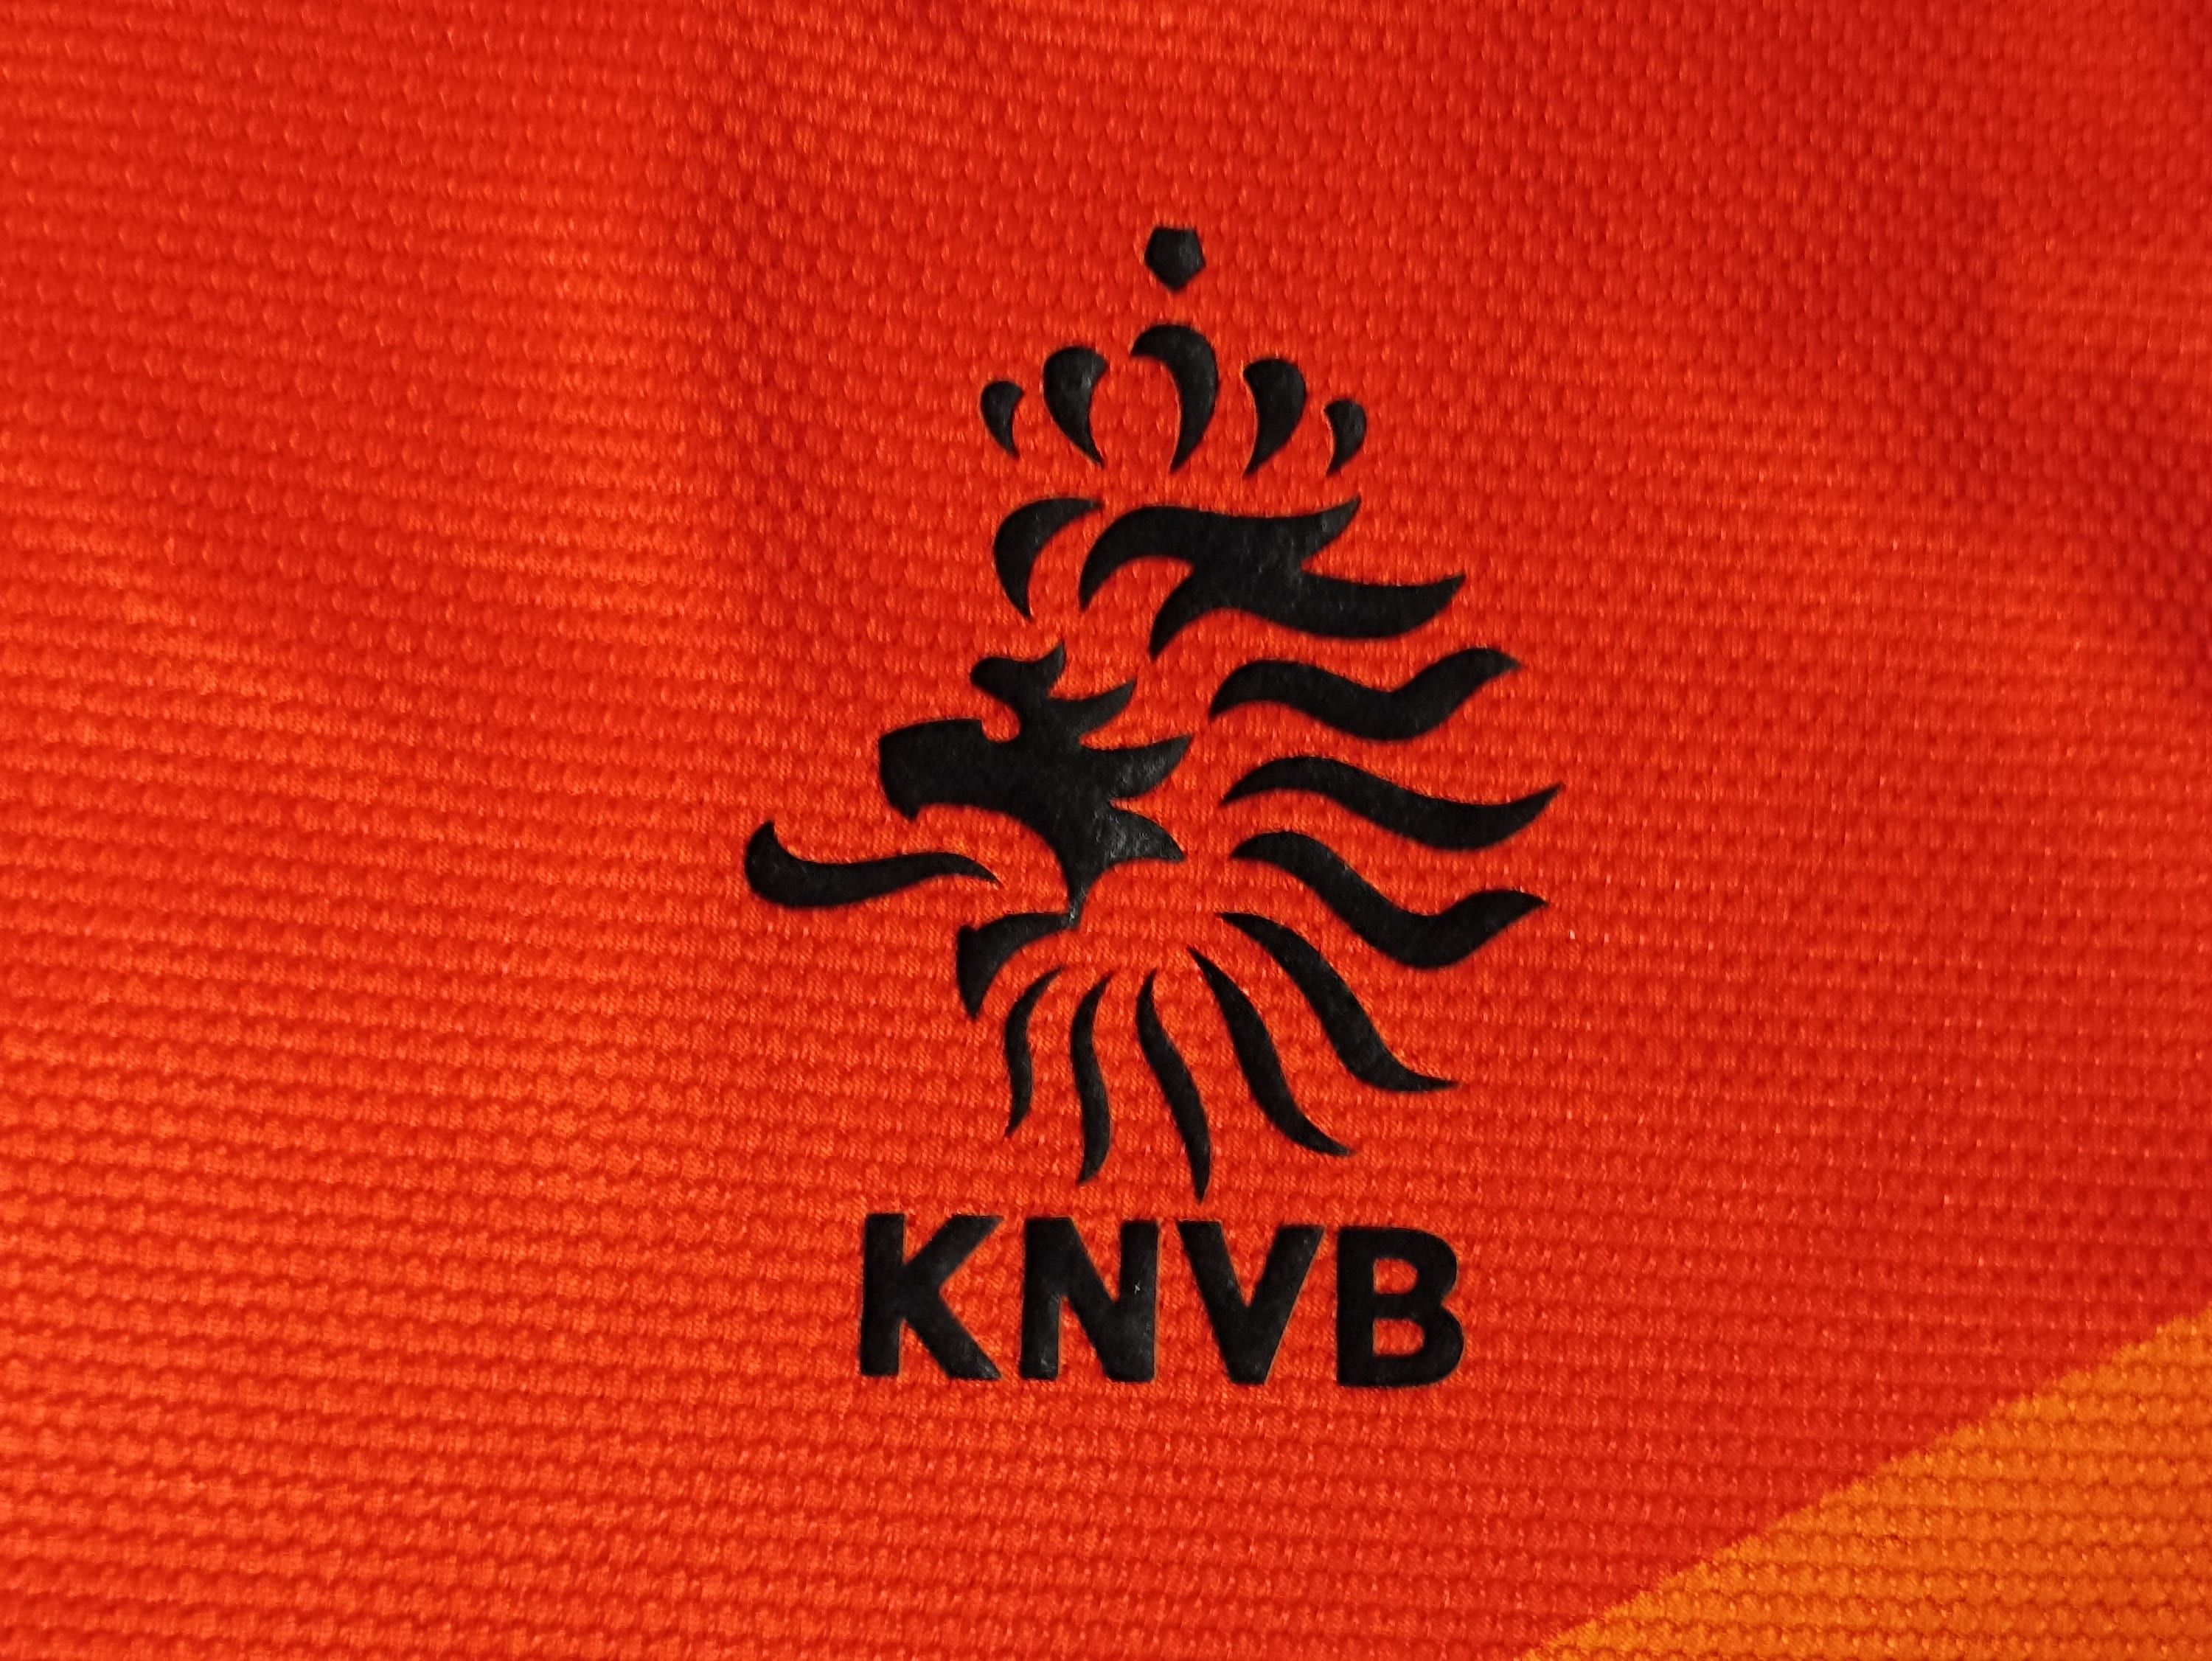  Netherlands Holland KNVB Logo Orange Square